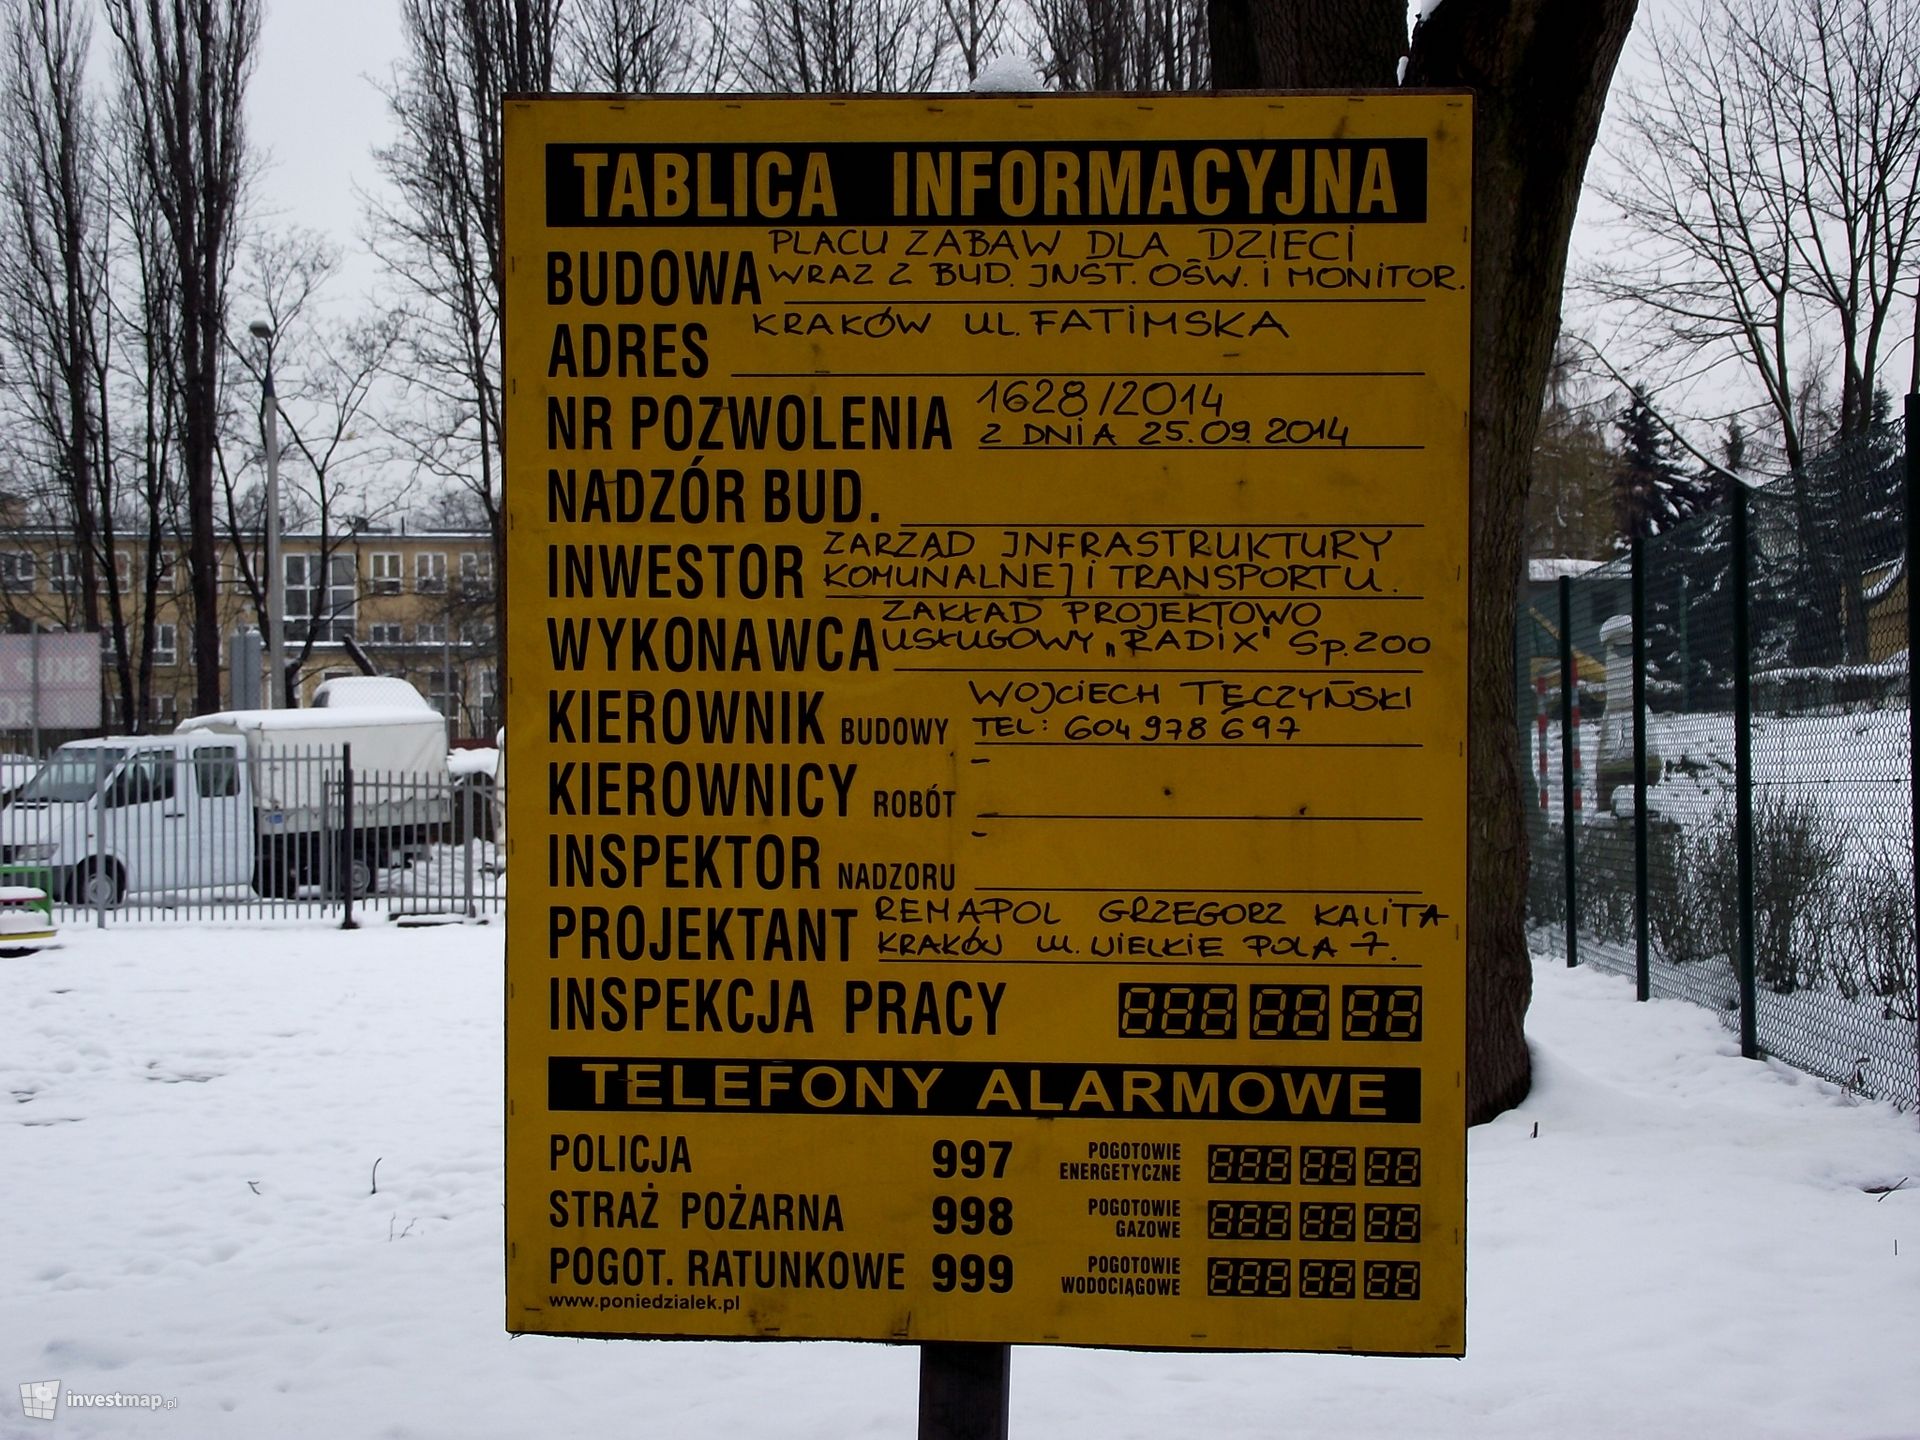 [Kraków] Plac Zabaw dla Dzieci - KRAKÓW, ul. Fatimska